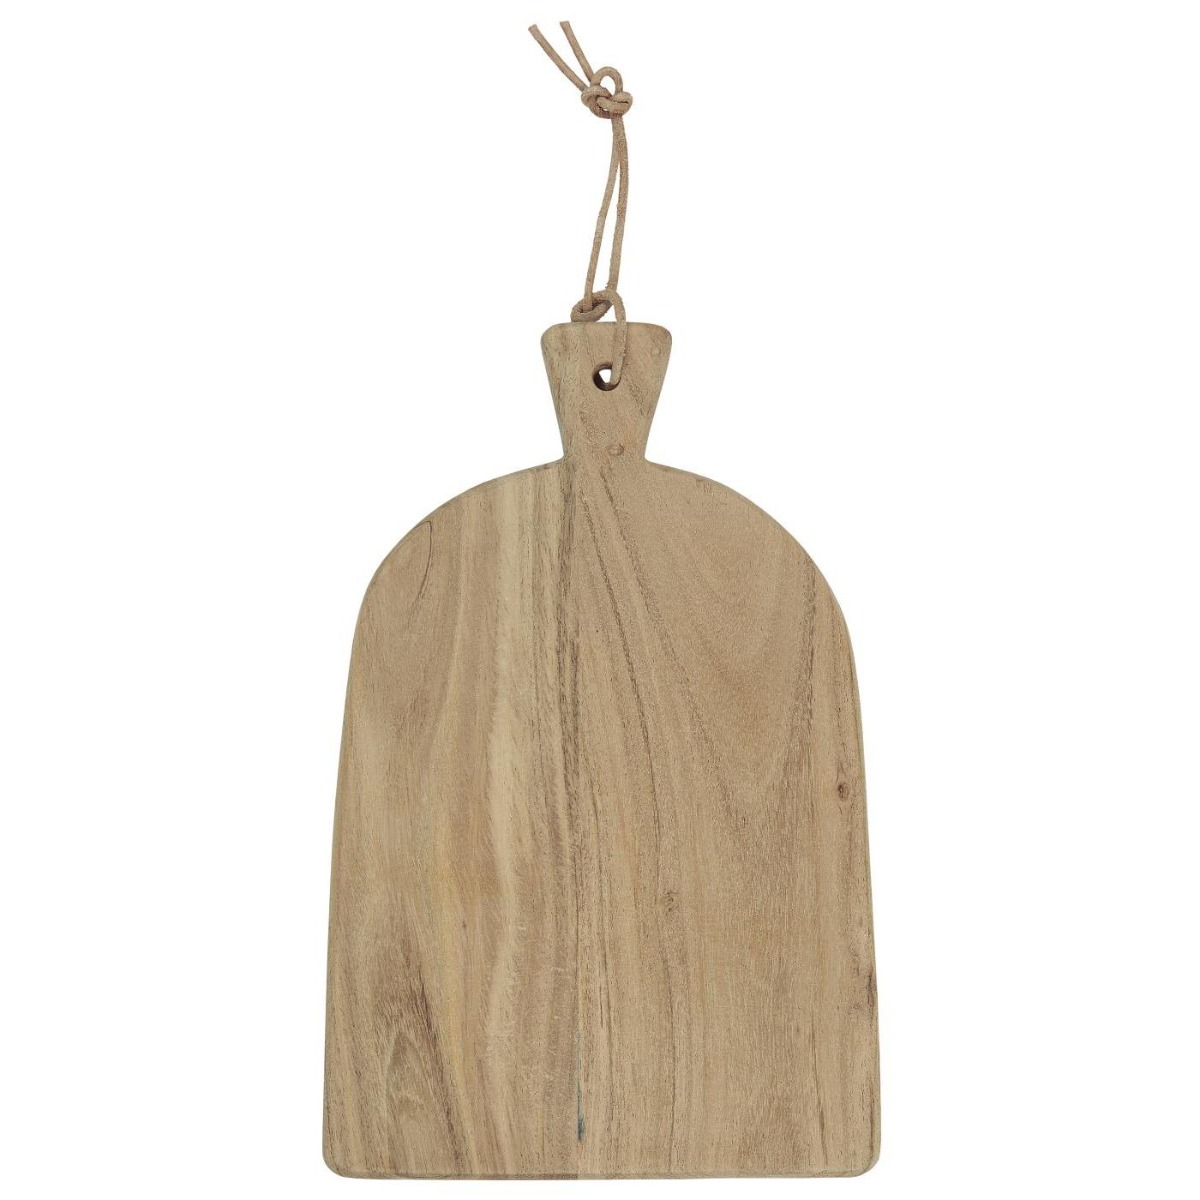 Cutting board acacia wood w/leather string